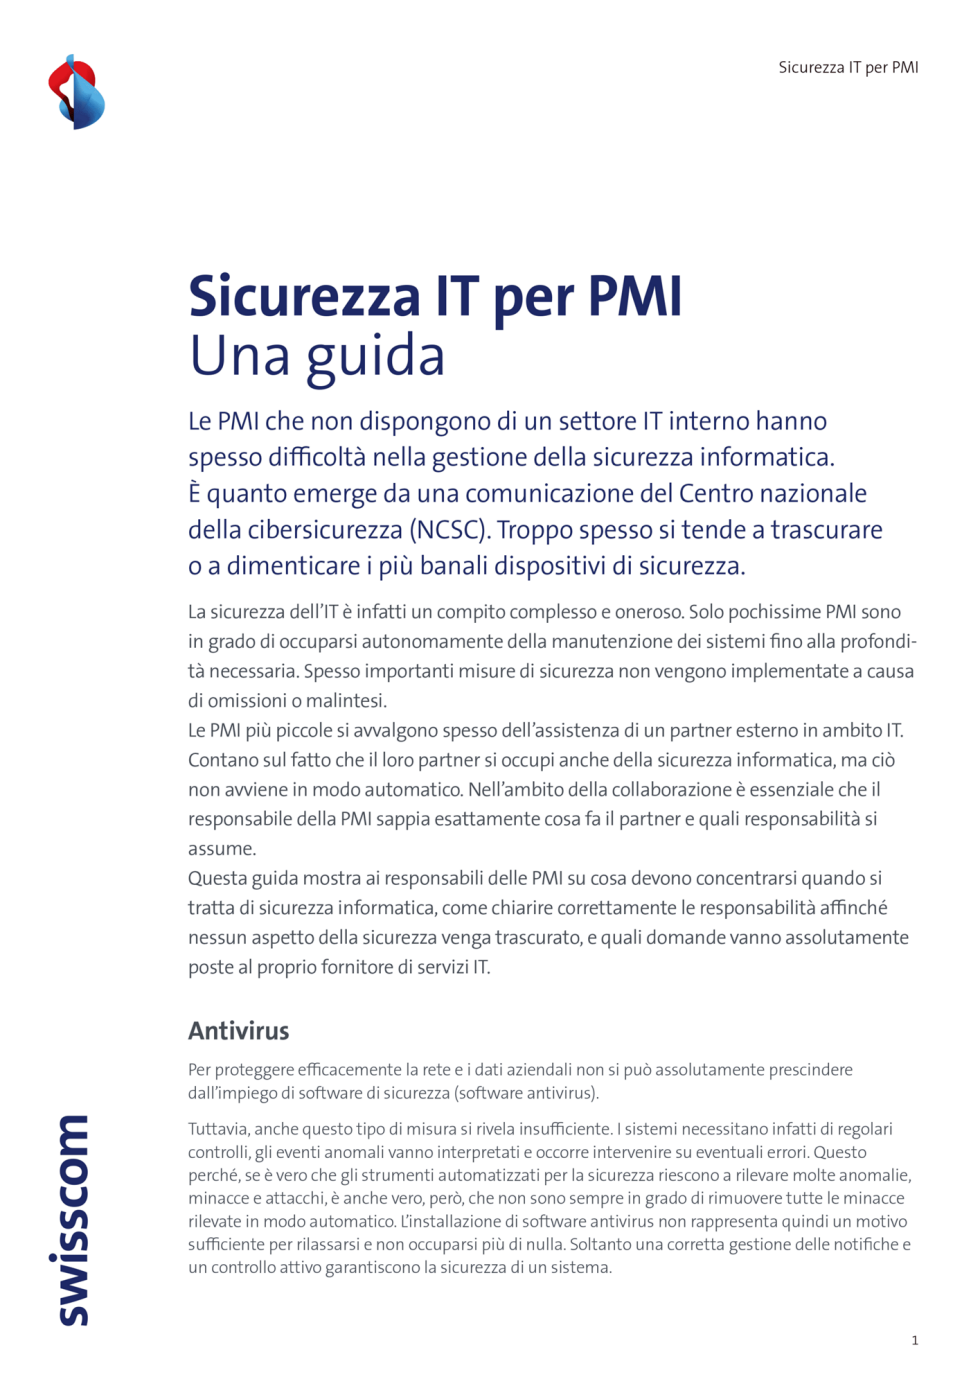 B2C-Swisscom-Guida-IT-Sicurezza-PMI-2020-ITA-v3.indd